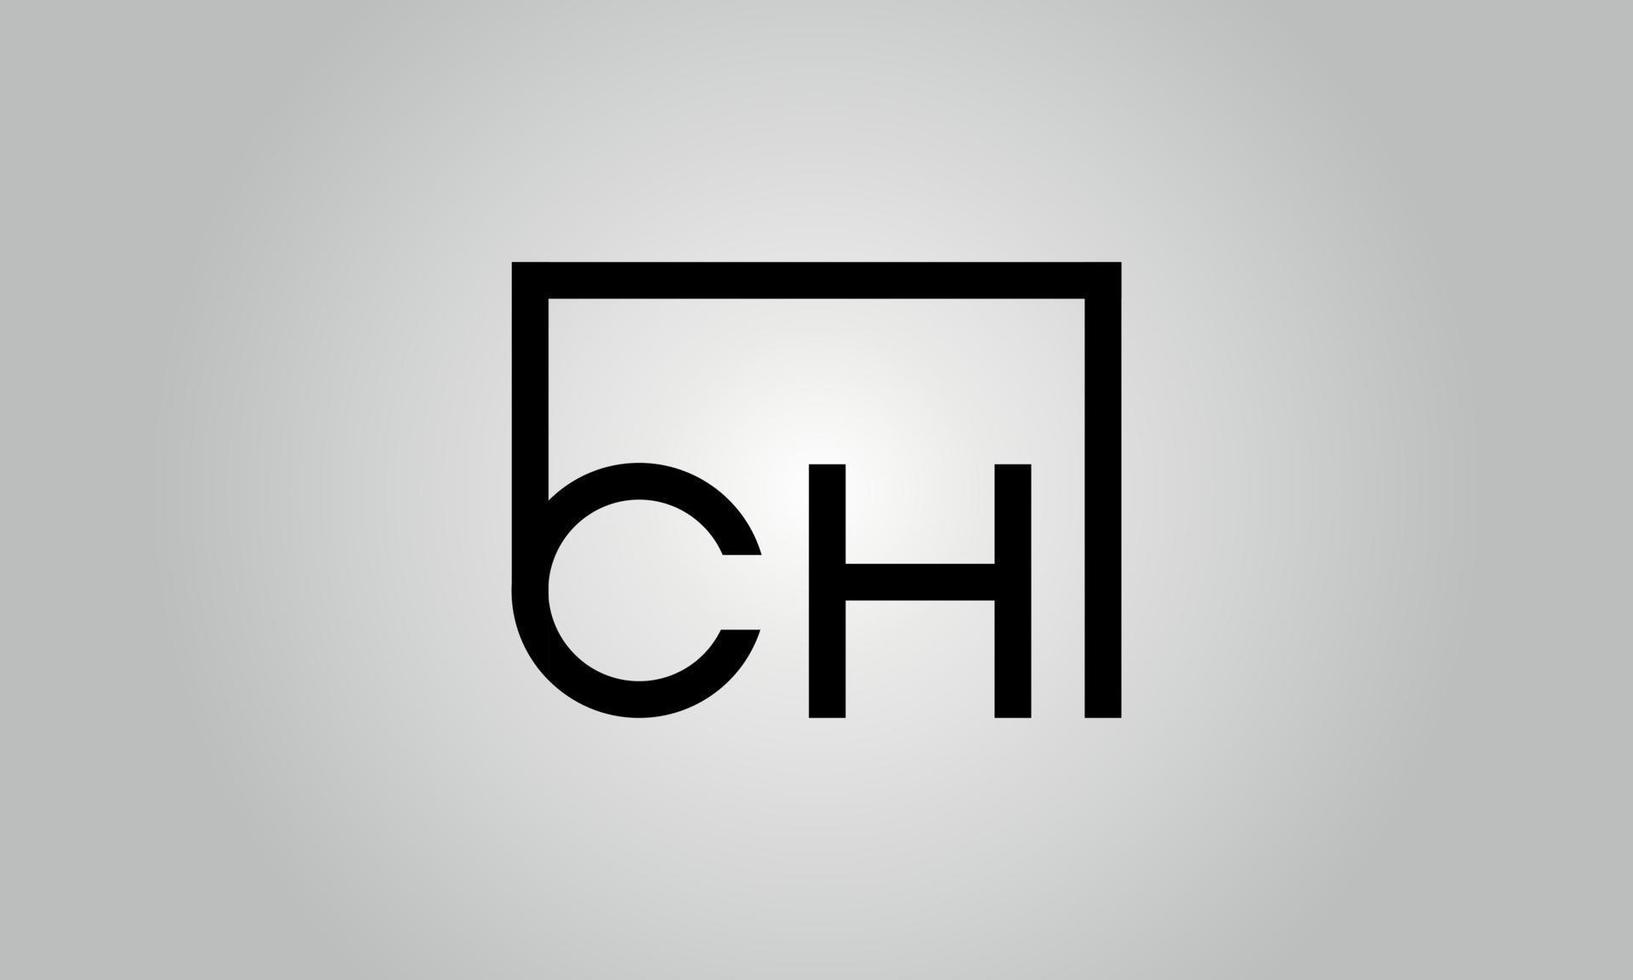 création de logo lettre ch. logo ch avec forme carrée dans le modèle vectoriel gratuit de couleurs noires.